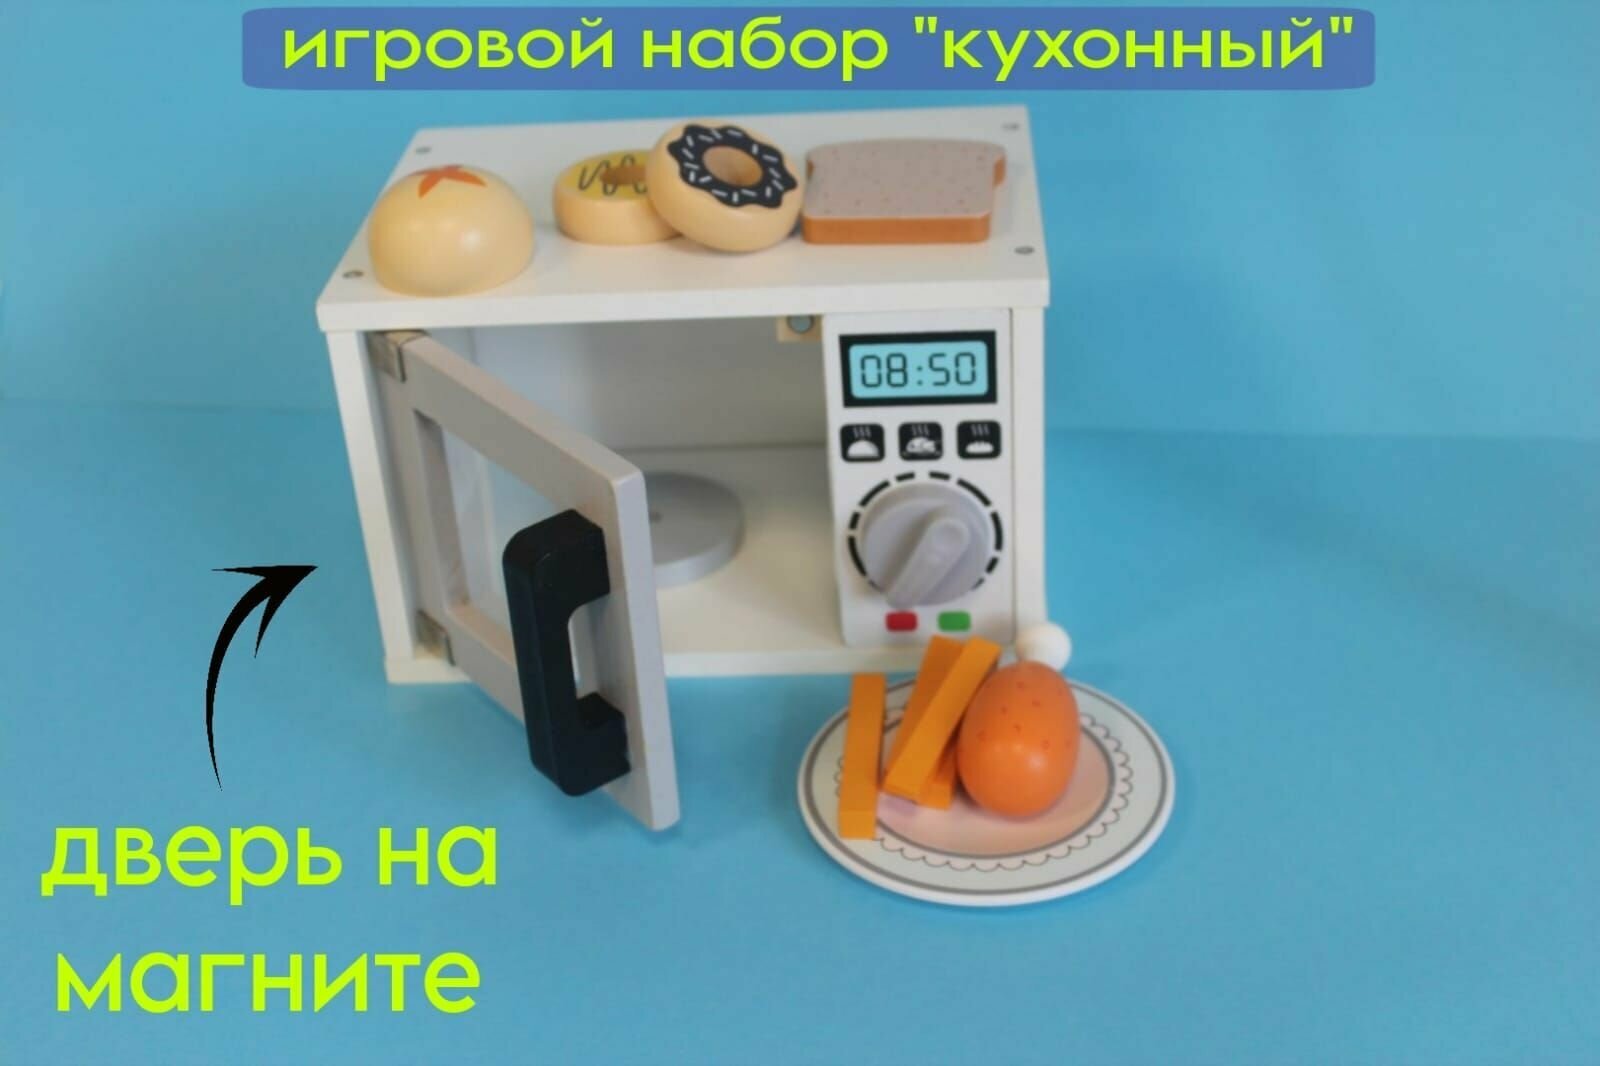 Игровой кухонный набор / Кухня, микроволновая печь, посуда и еда / деревянные детские игрушки